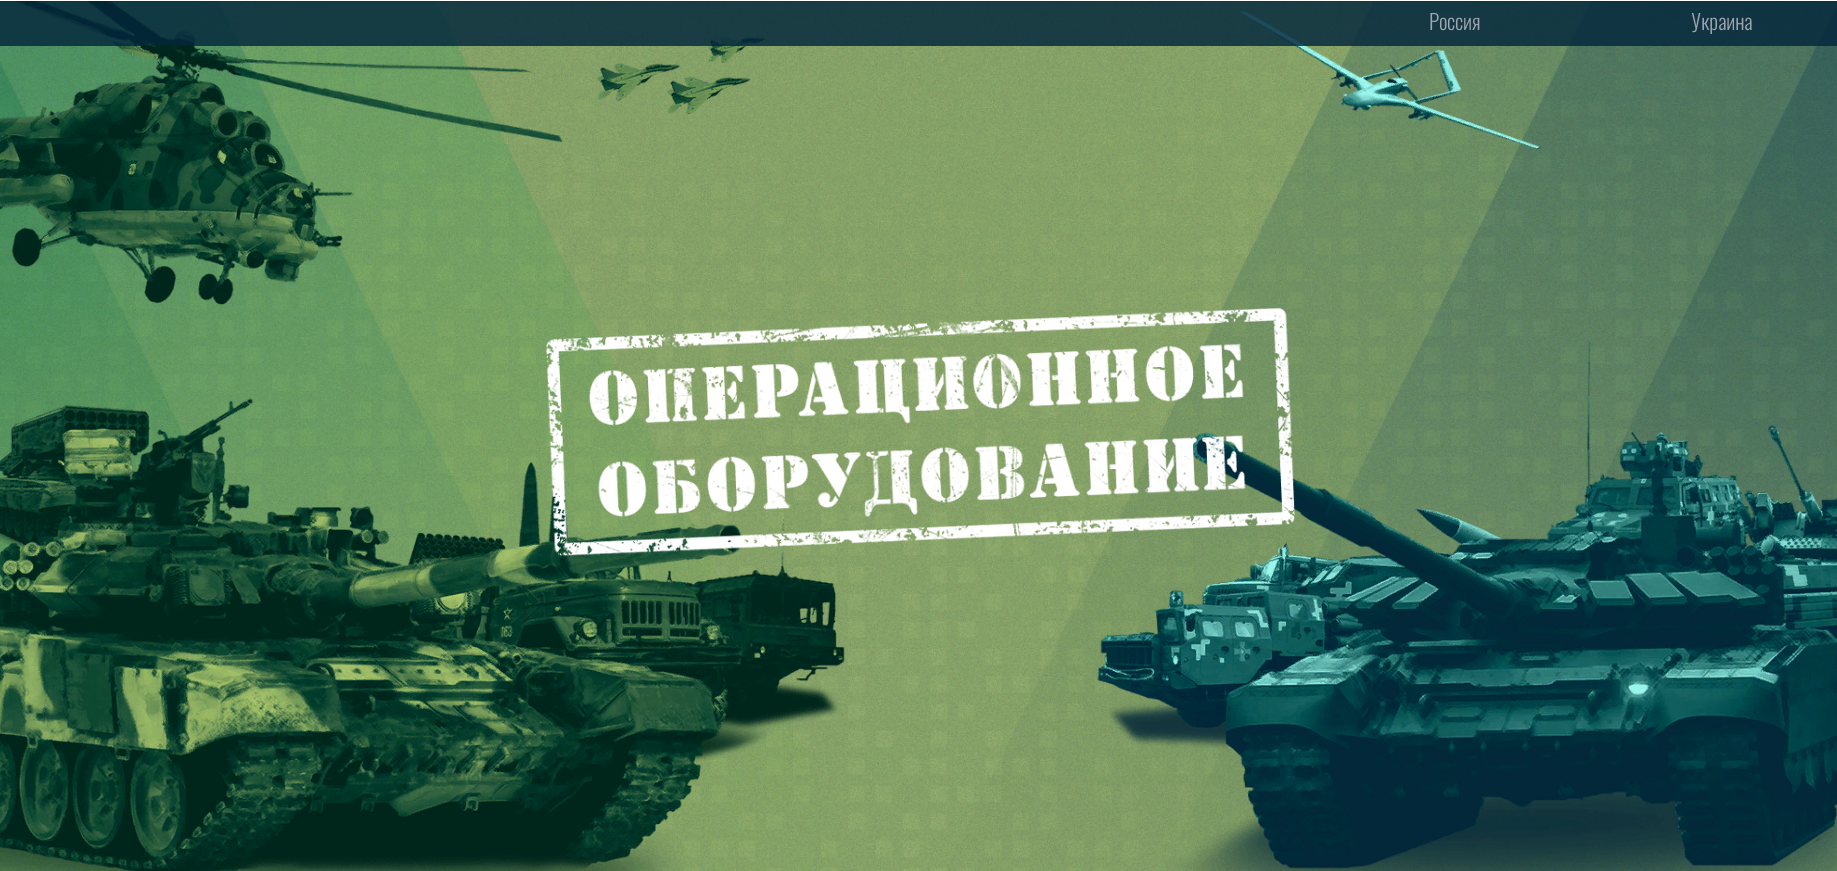 Military equipment of Russia and Ukraine.